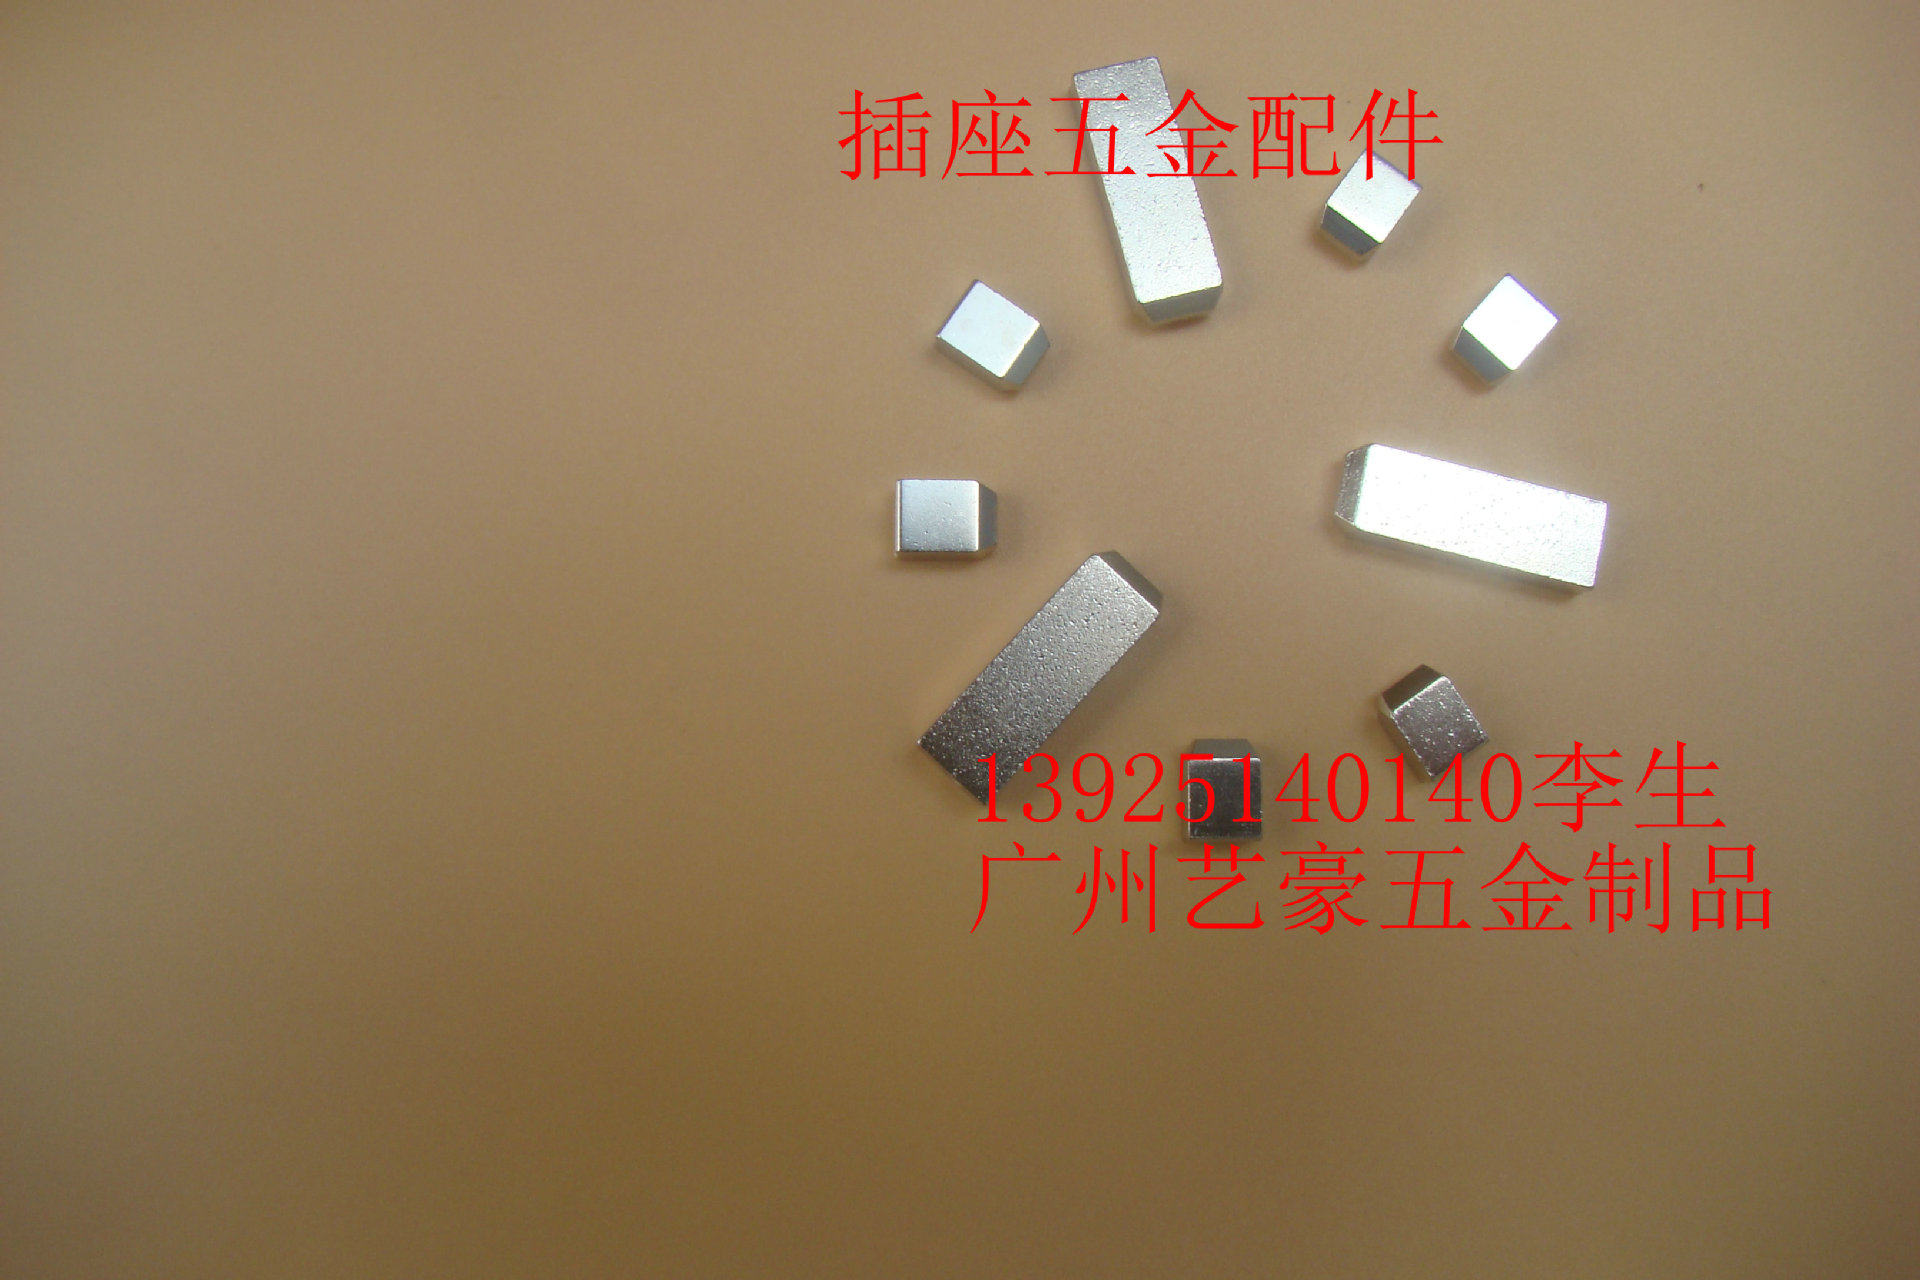 广州五孔插座配件批发价格、公司电话